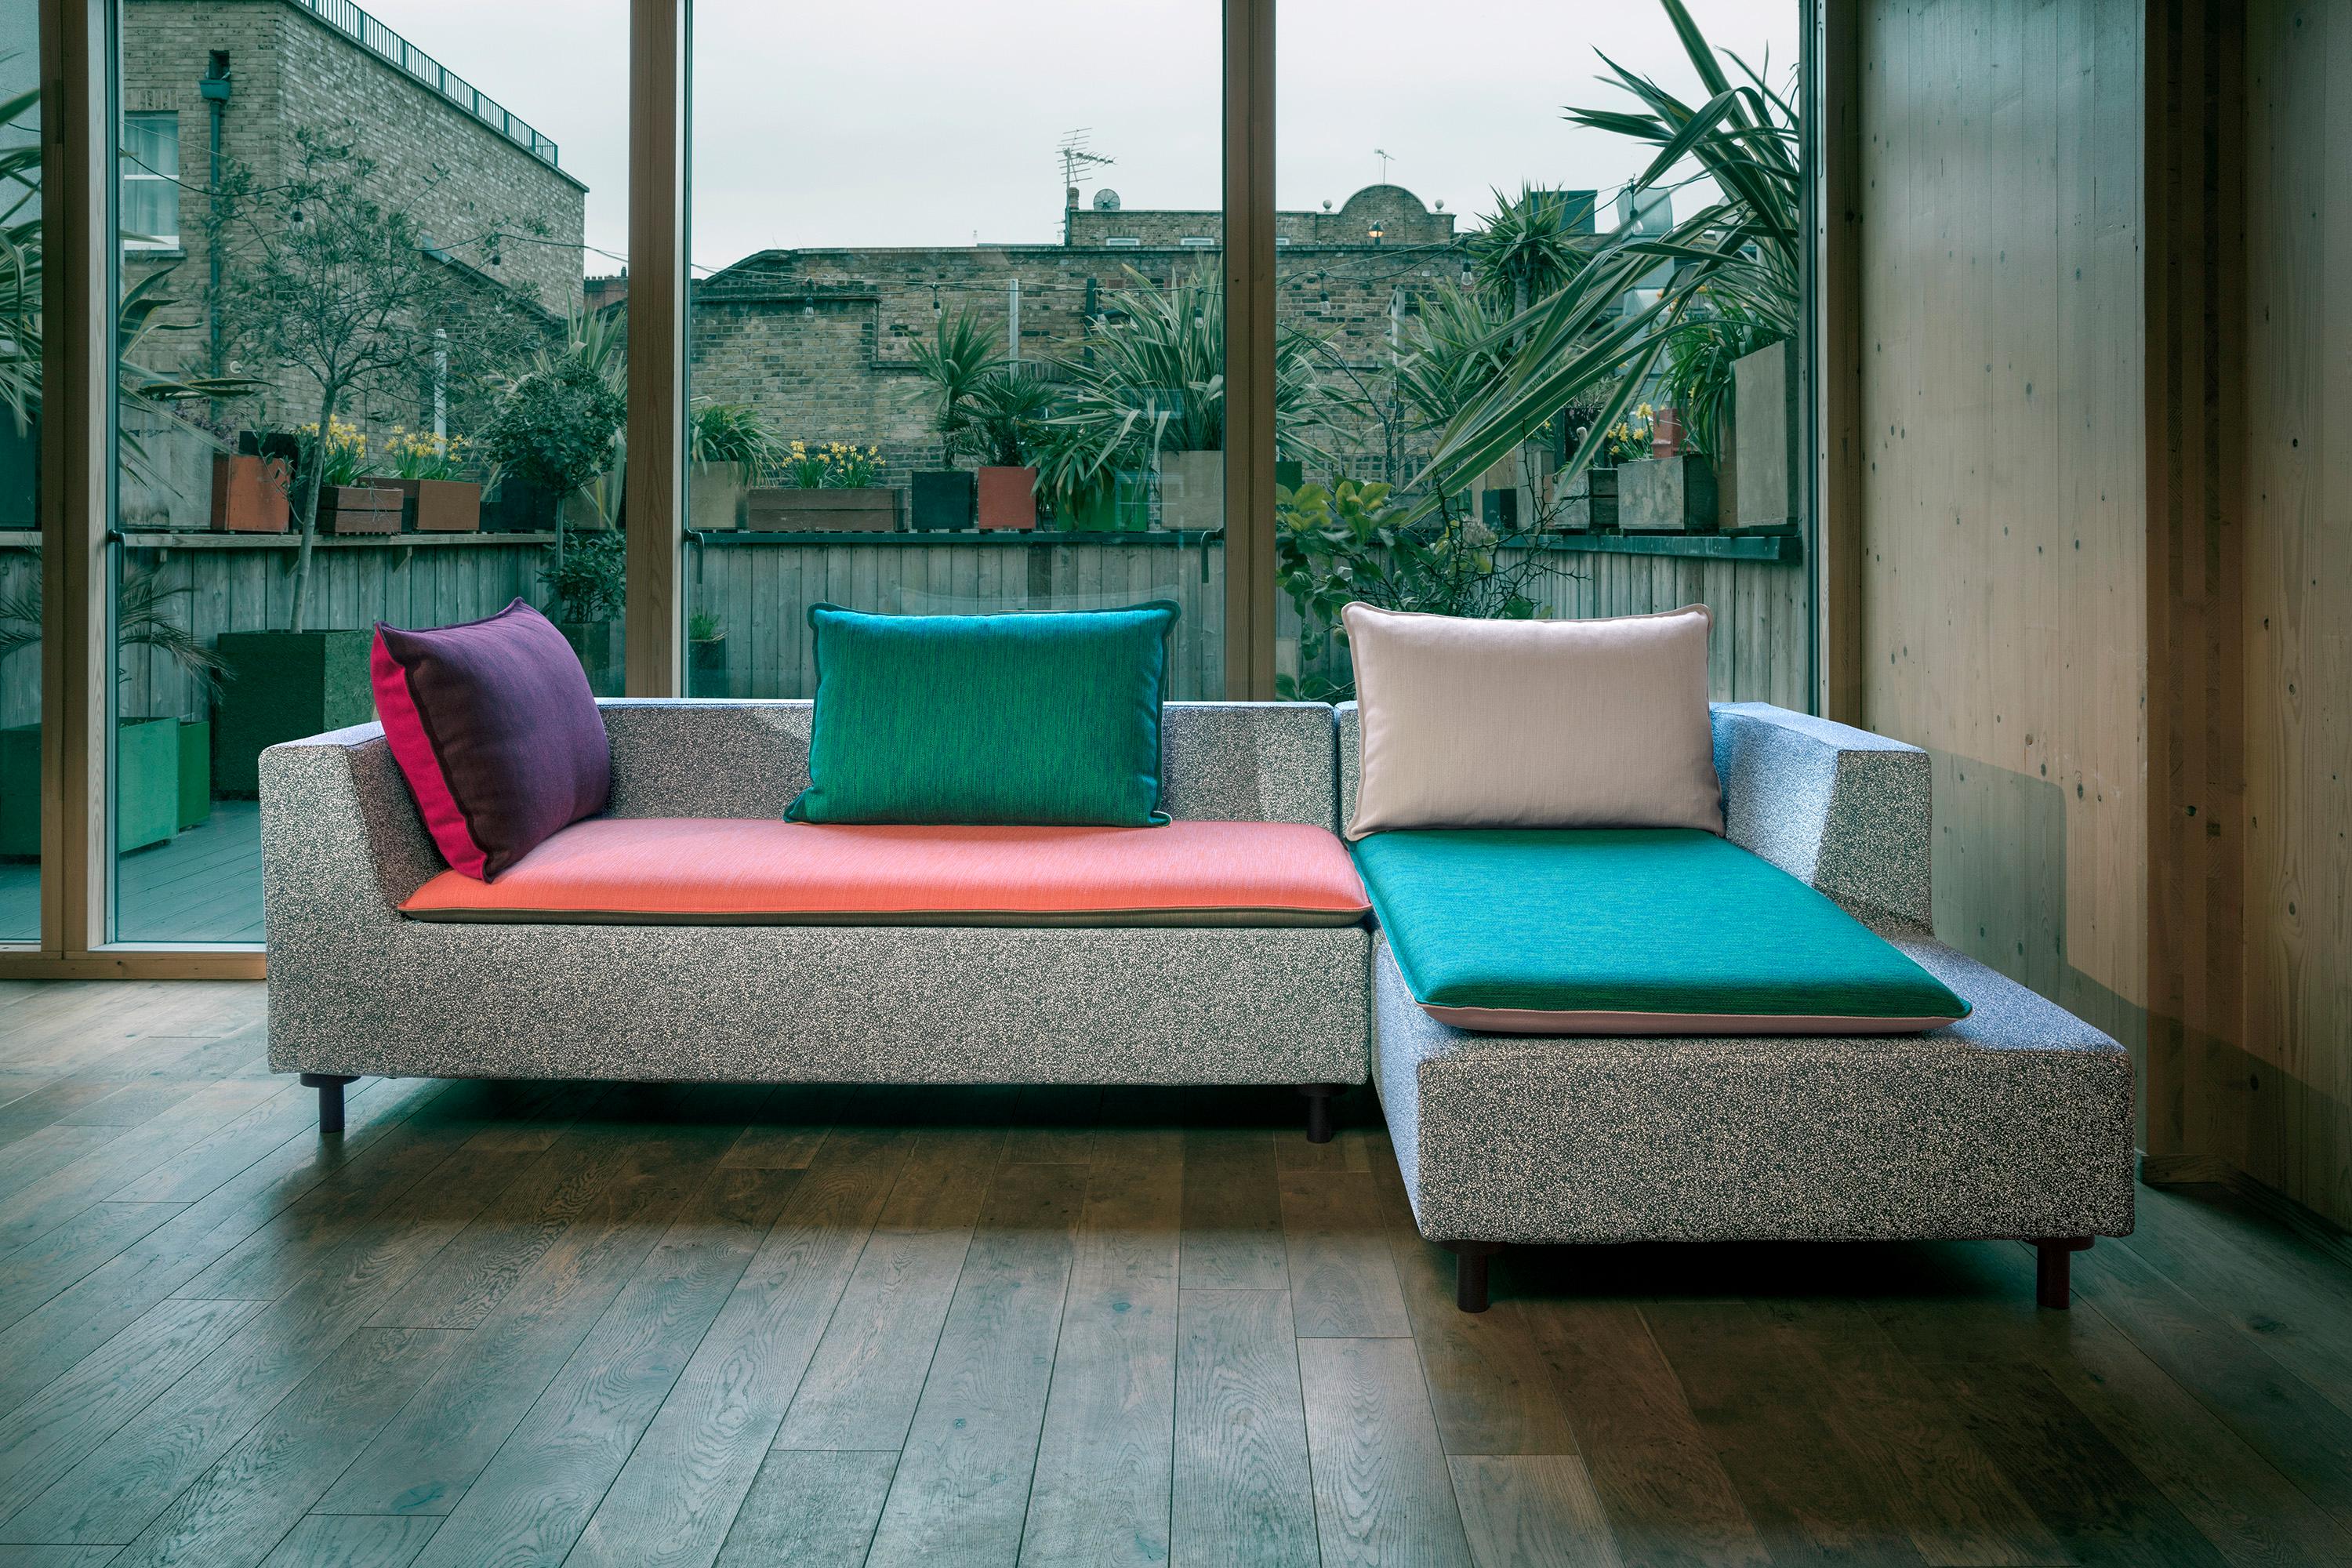 Konstantin Grcic hat eine kompakte, geometrische Liege mit reiner Form und großer Persönlichkeit geschaffen, die eine moderne, minimalistische Aktualisierung der traditionellen Liege darstellt. Das kompakte Design füllt den Raum zwischen einem Sofa